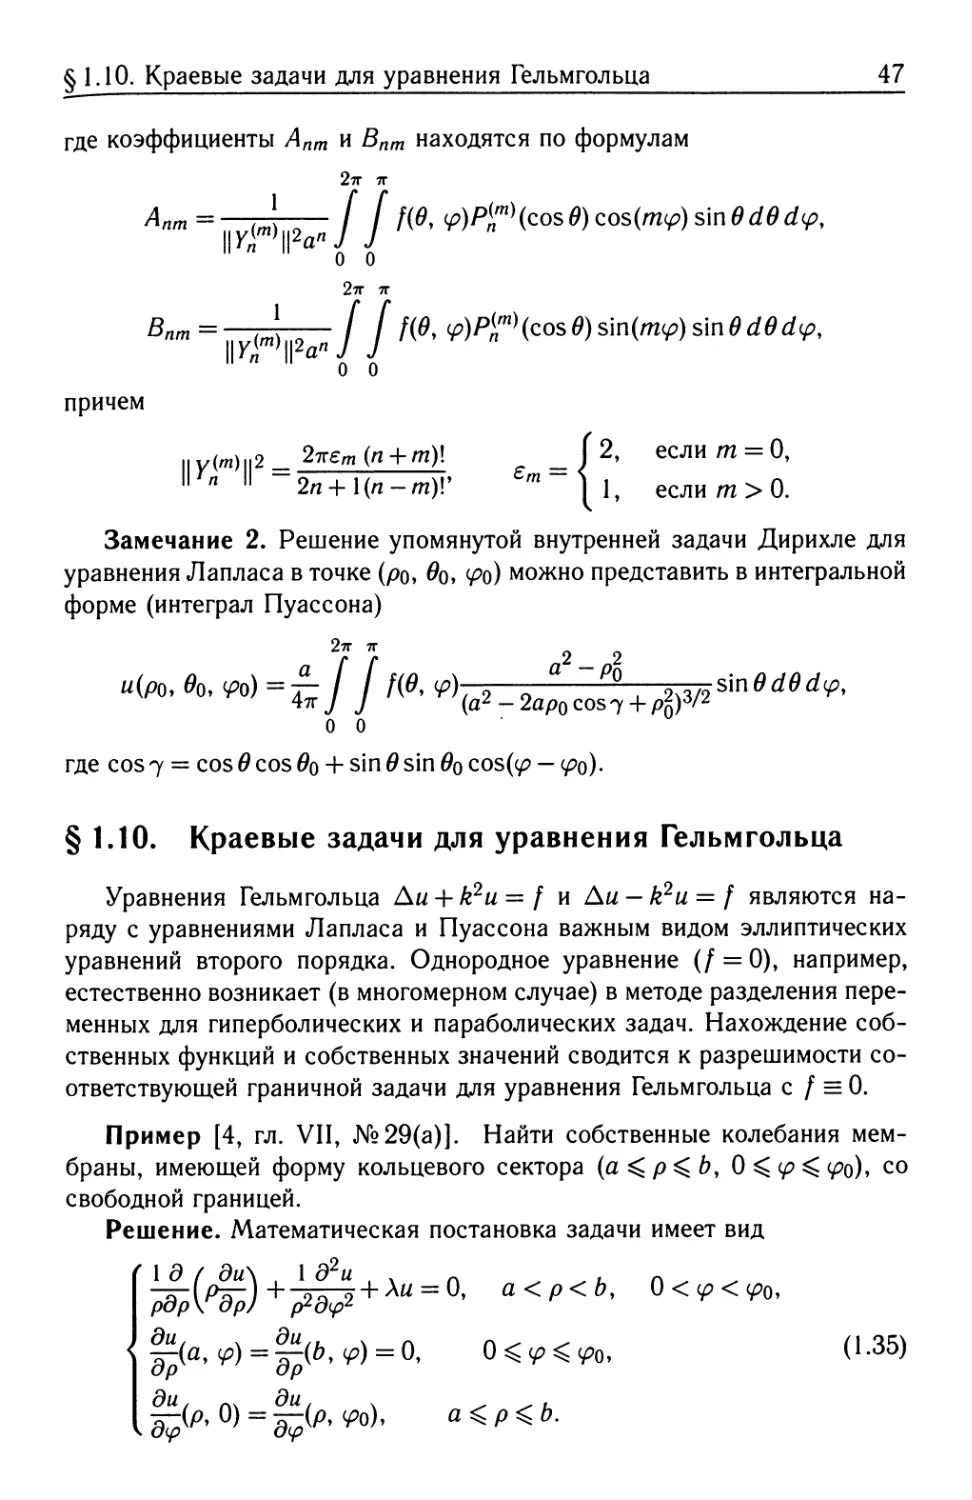 §1.10. Краевые задачи для уравнения Гельмгольца